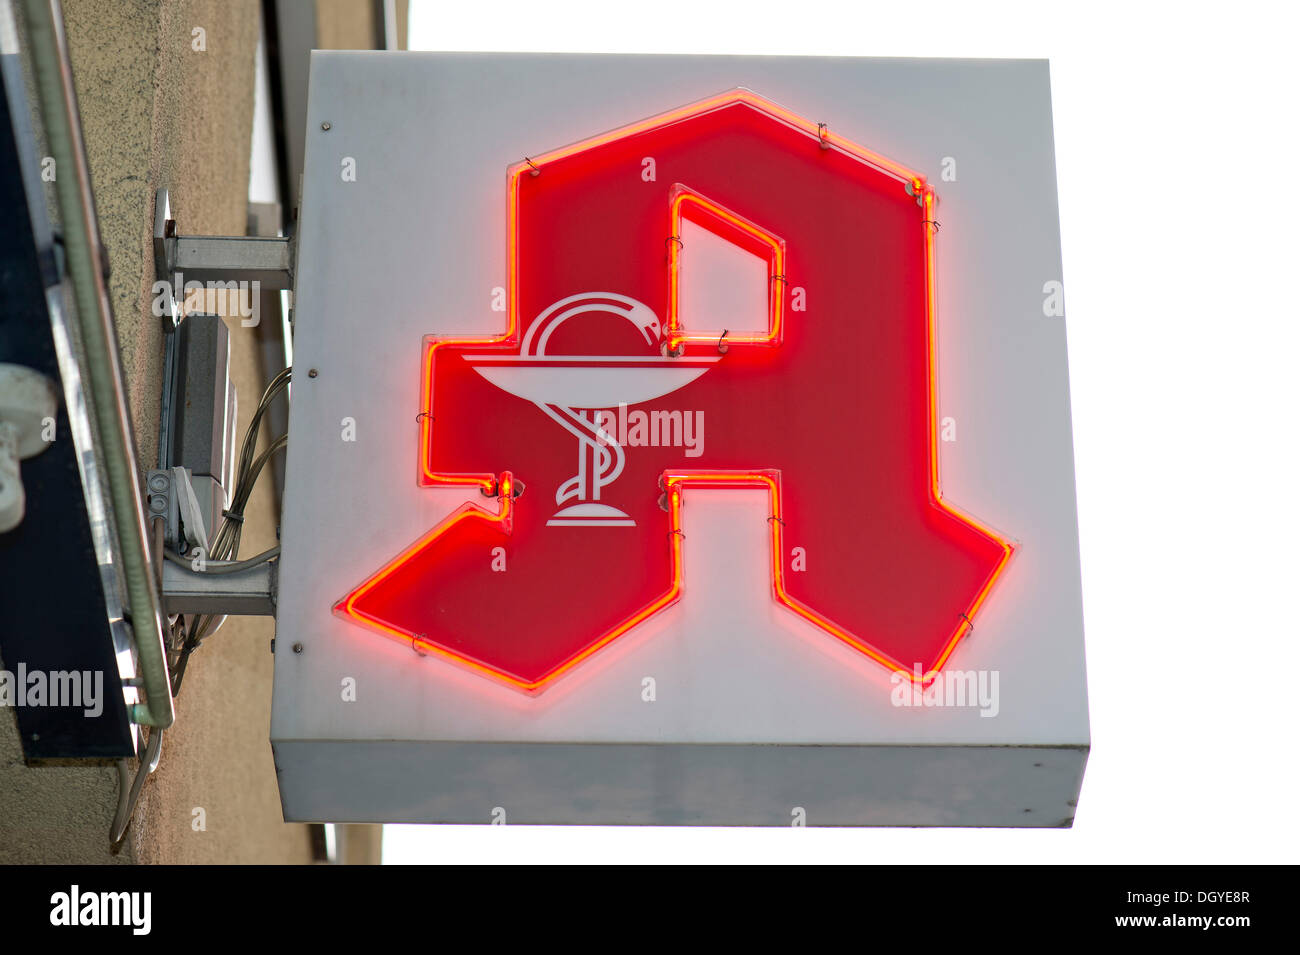 Apotheke-Schild, Apotheke Logo, eine rote Buchstabe A mit der Aesculapian Schlange, Apotheke, Stuttgart, Baden-Württemberg Stockfoto